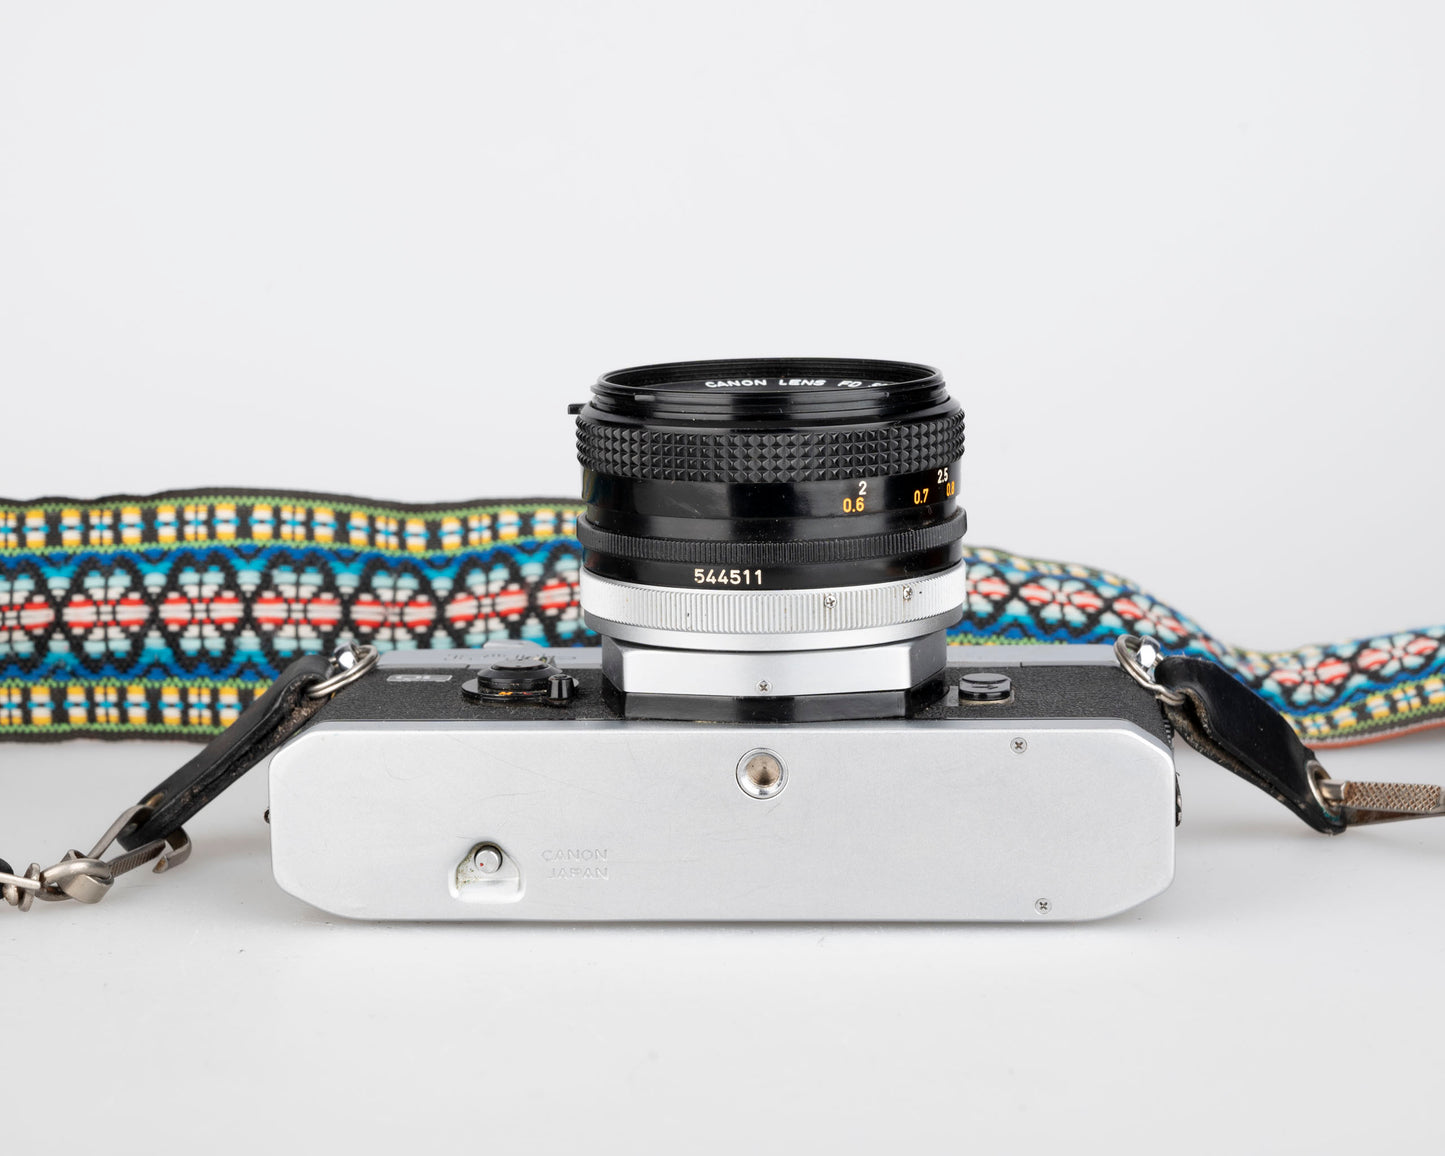 Reflex à film Canon FTb 35 mm avec objectif Canon FD 50 mm f1.8 (série 451988)